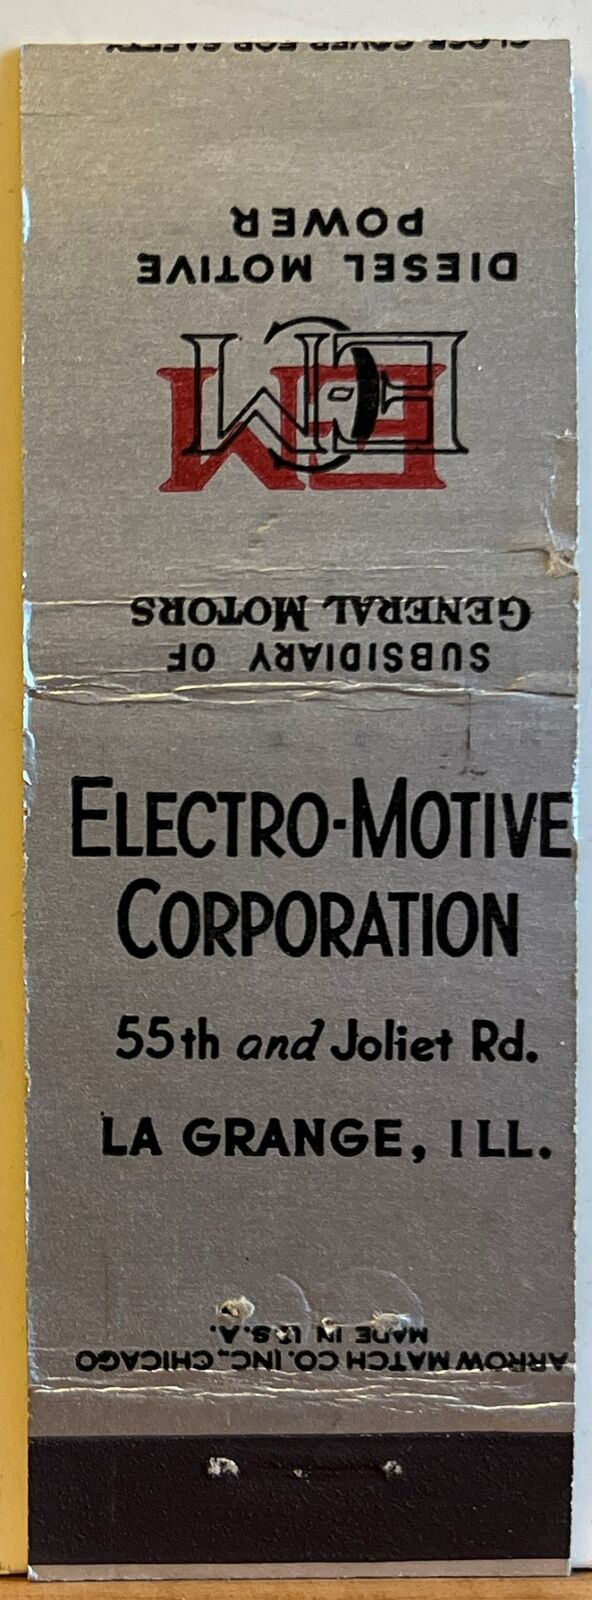 Electro-Motive Corporation La Grange IL Illinois Vintage Matchbook Cover